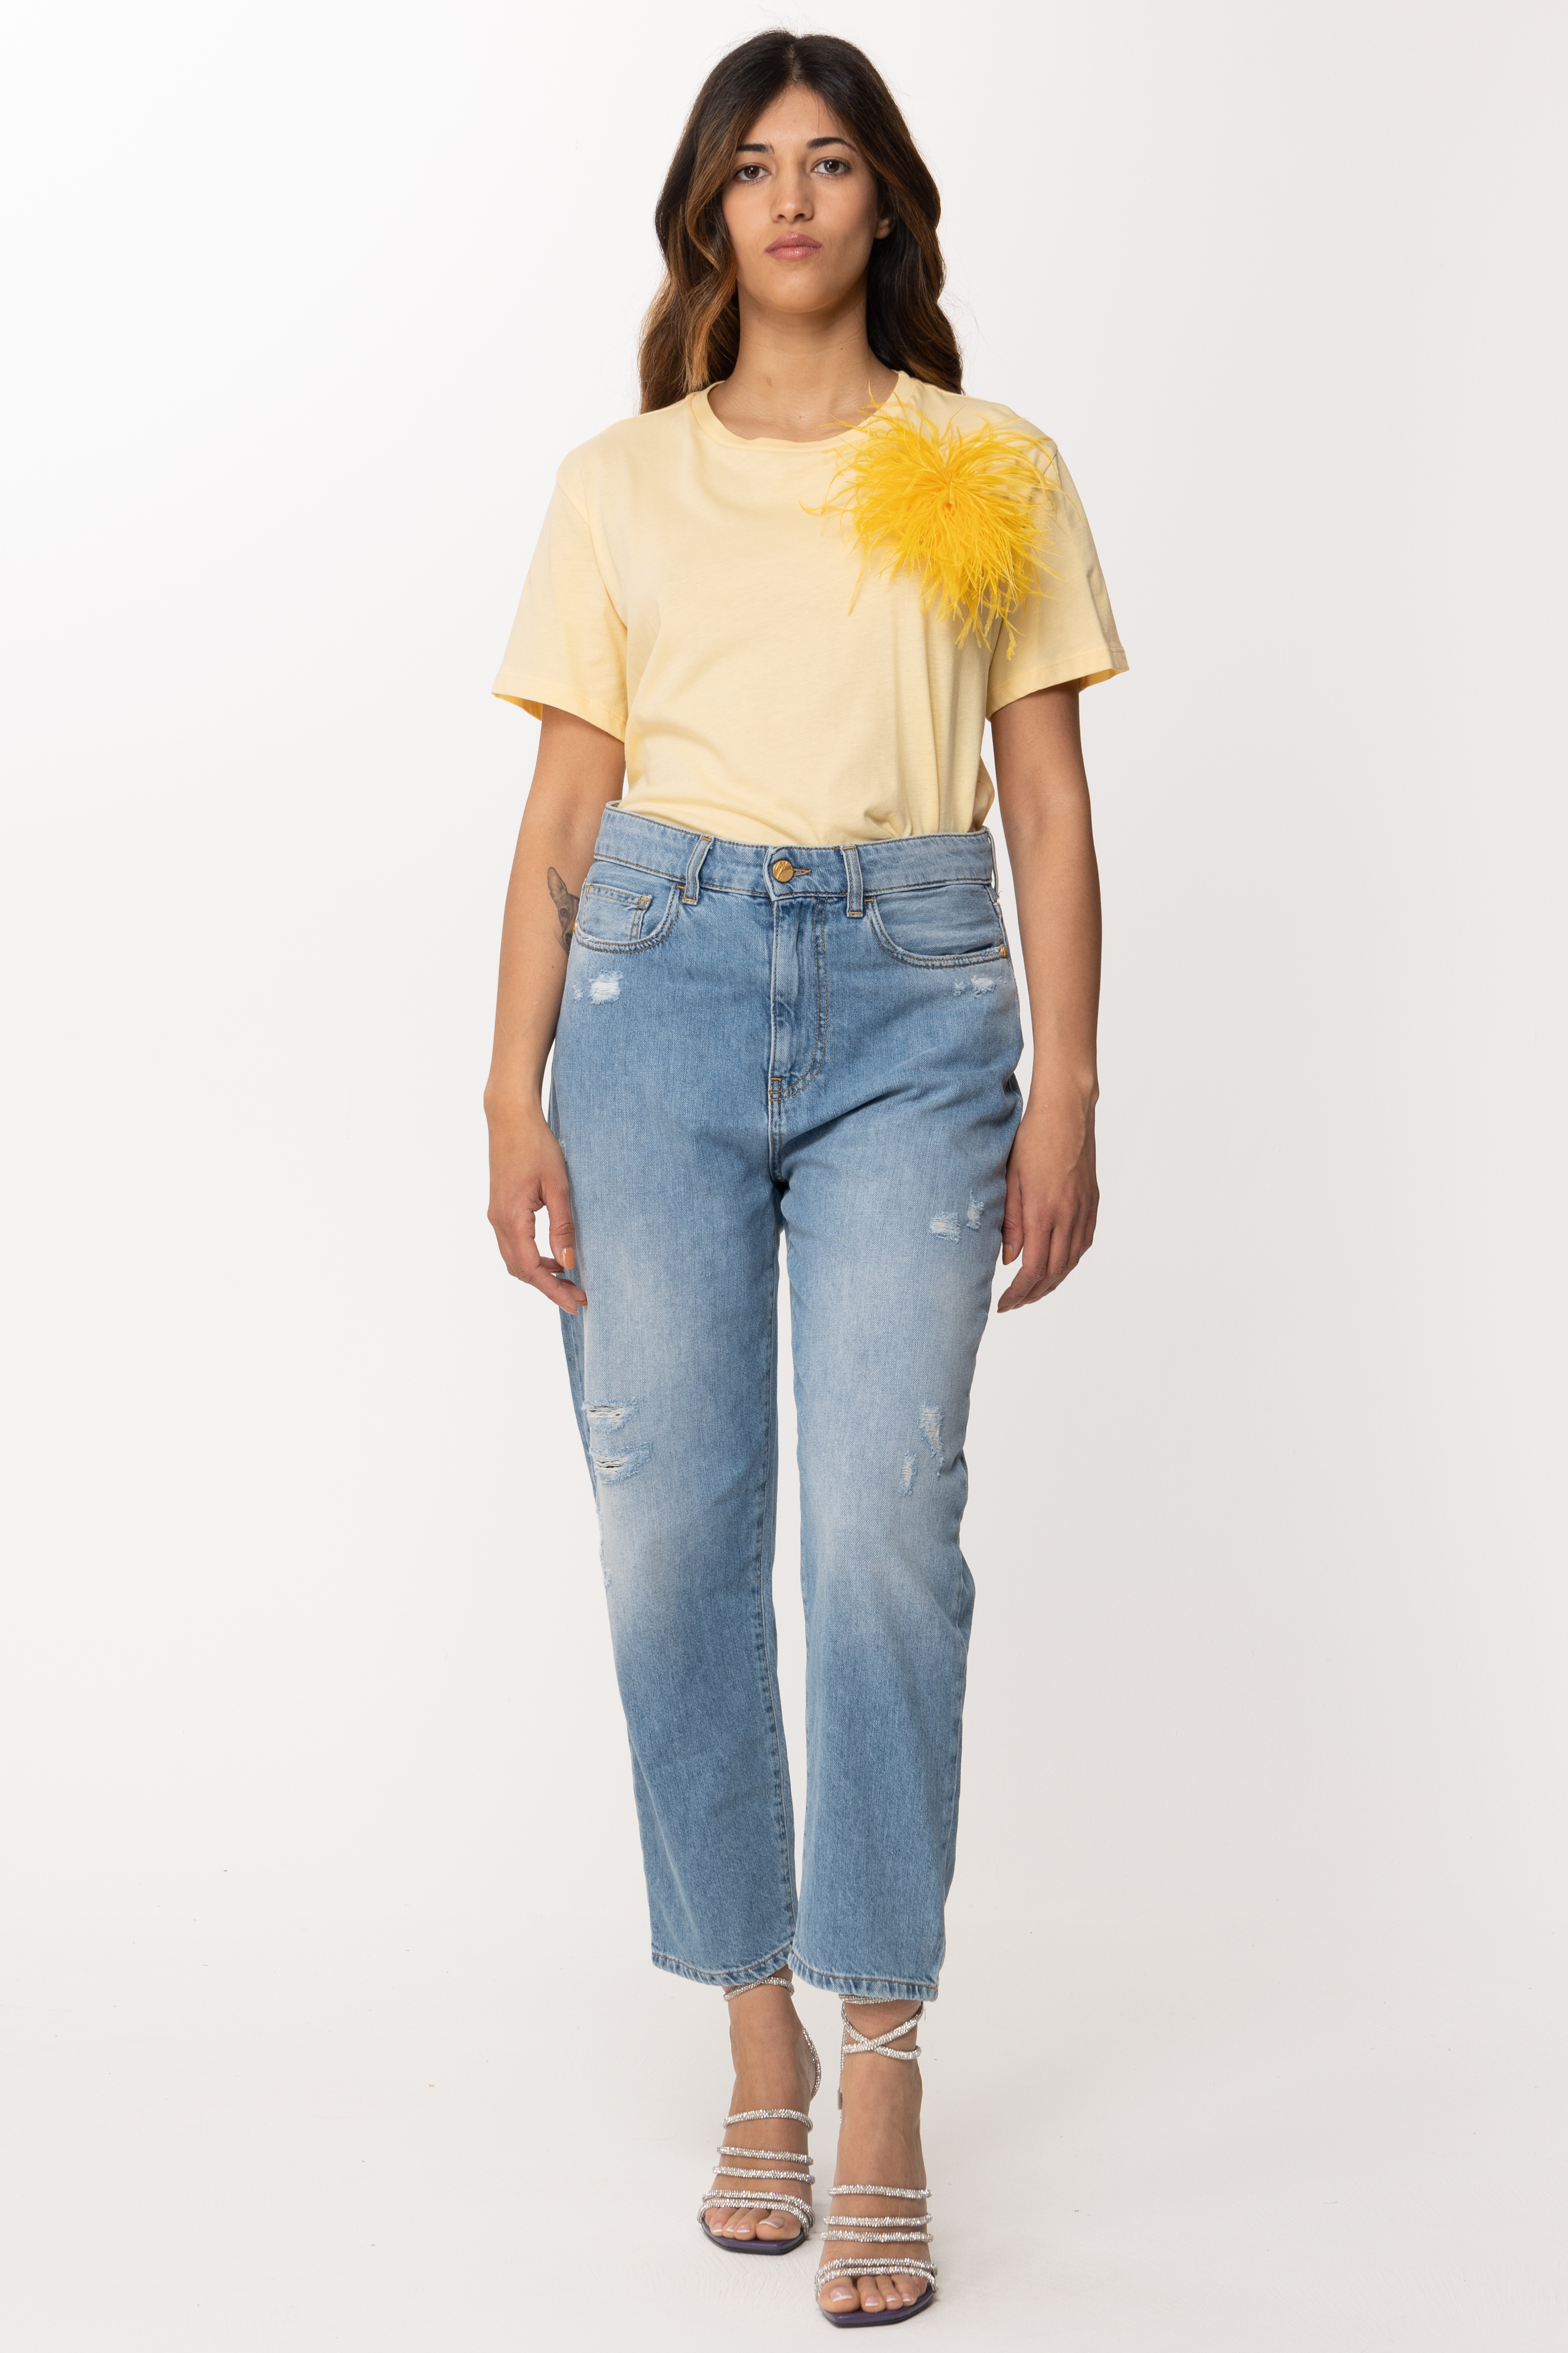 Anteprima: Patrizia Pepe T-shirt con inserto piumette Clarity Yellow